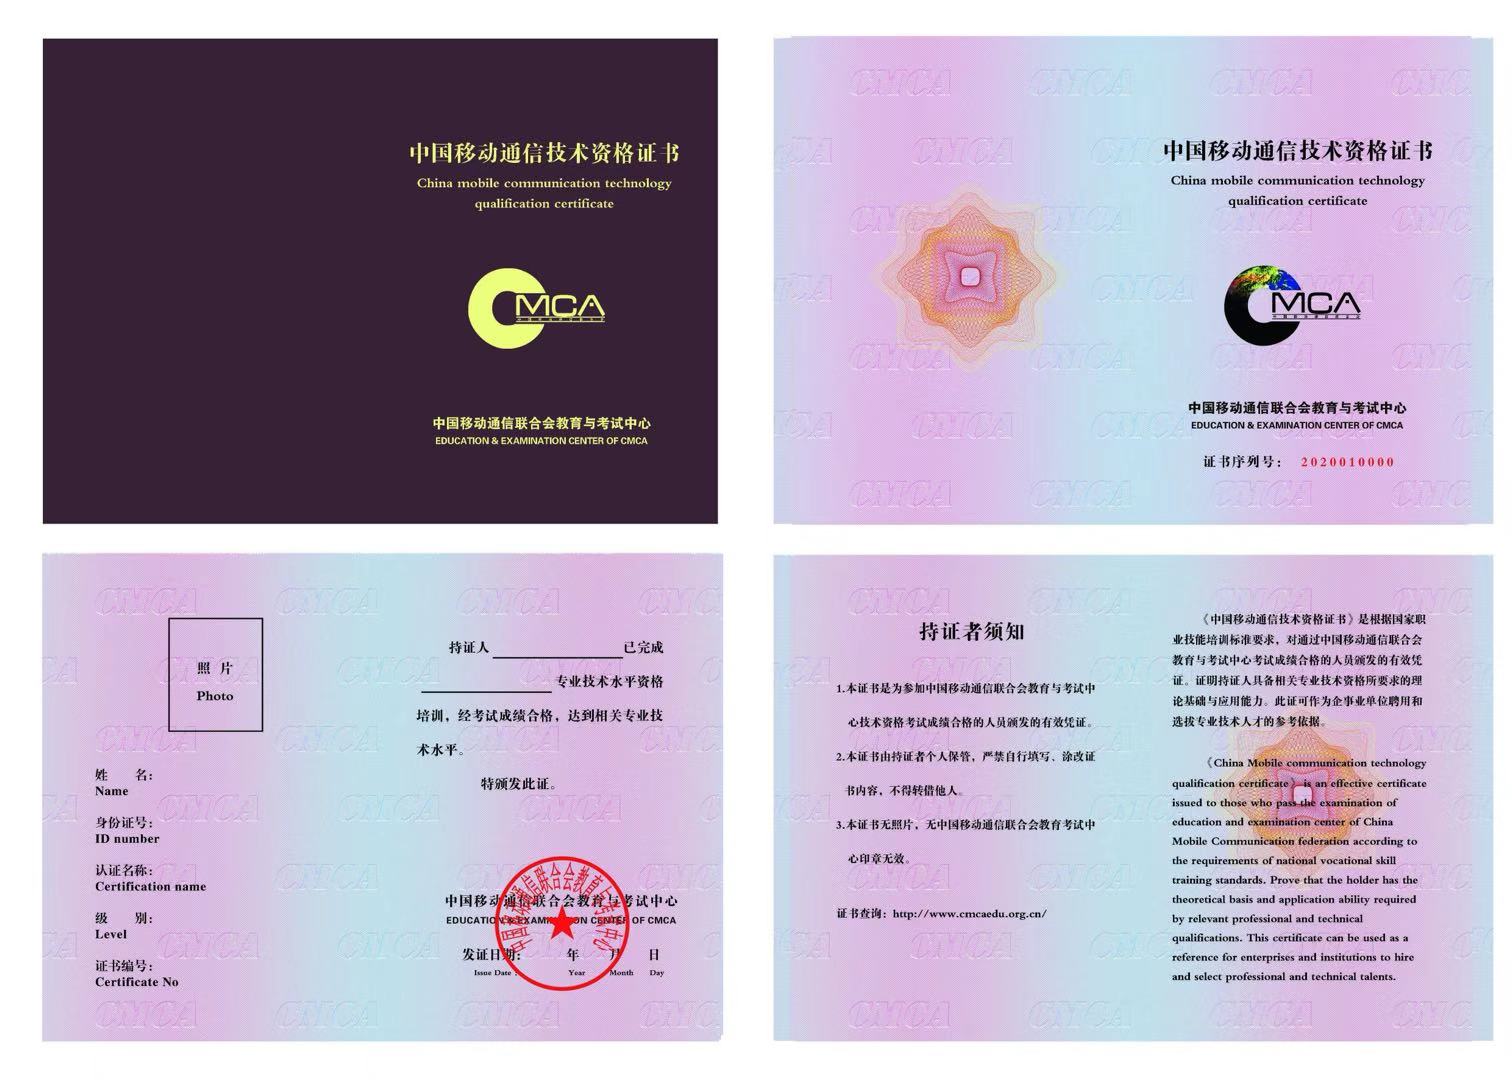 中国移动通信联合会教育与考试中心 酒店管理信息化运营师 中国移动通信技术资格证书